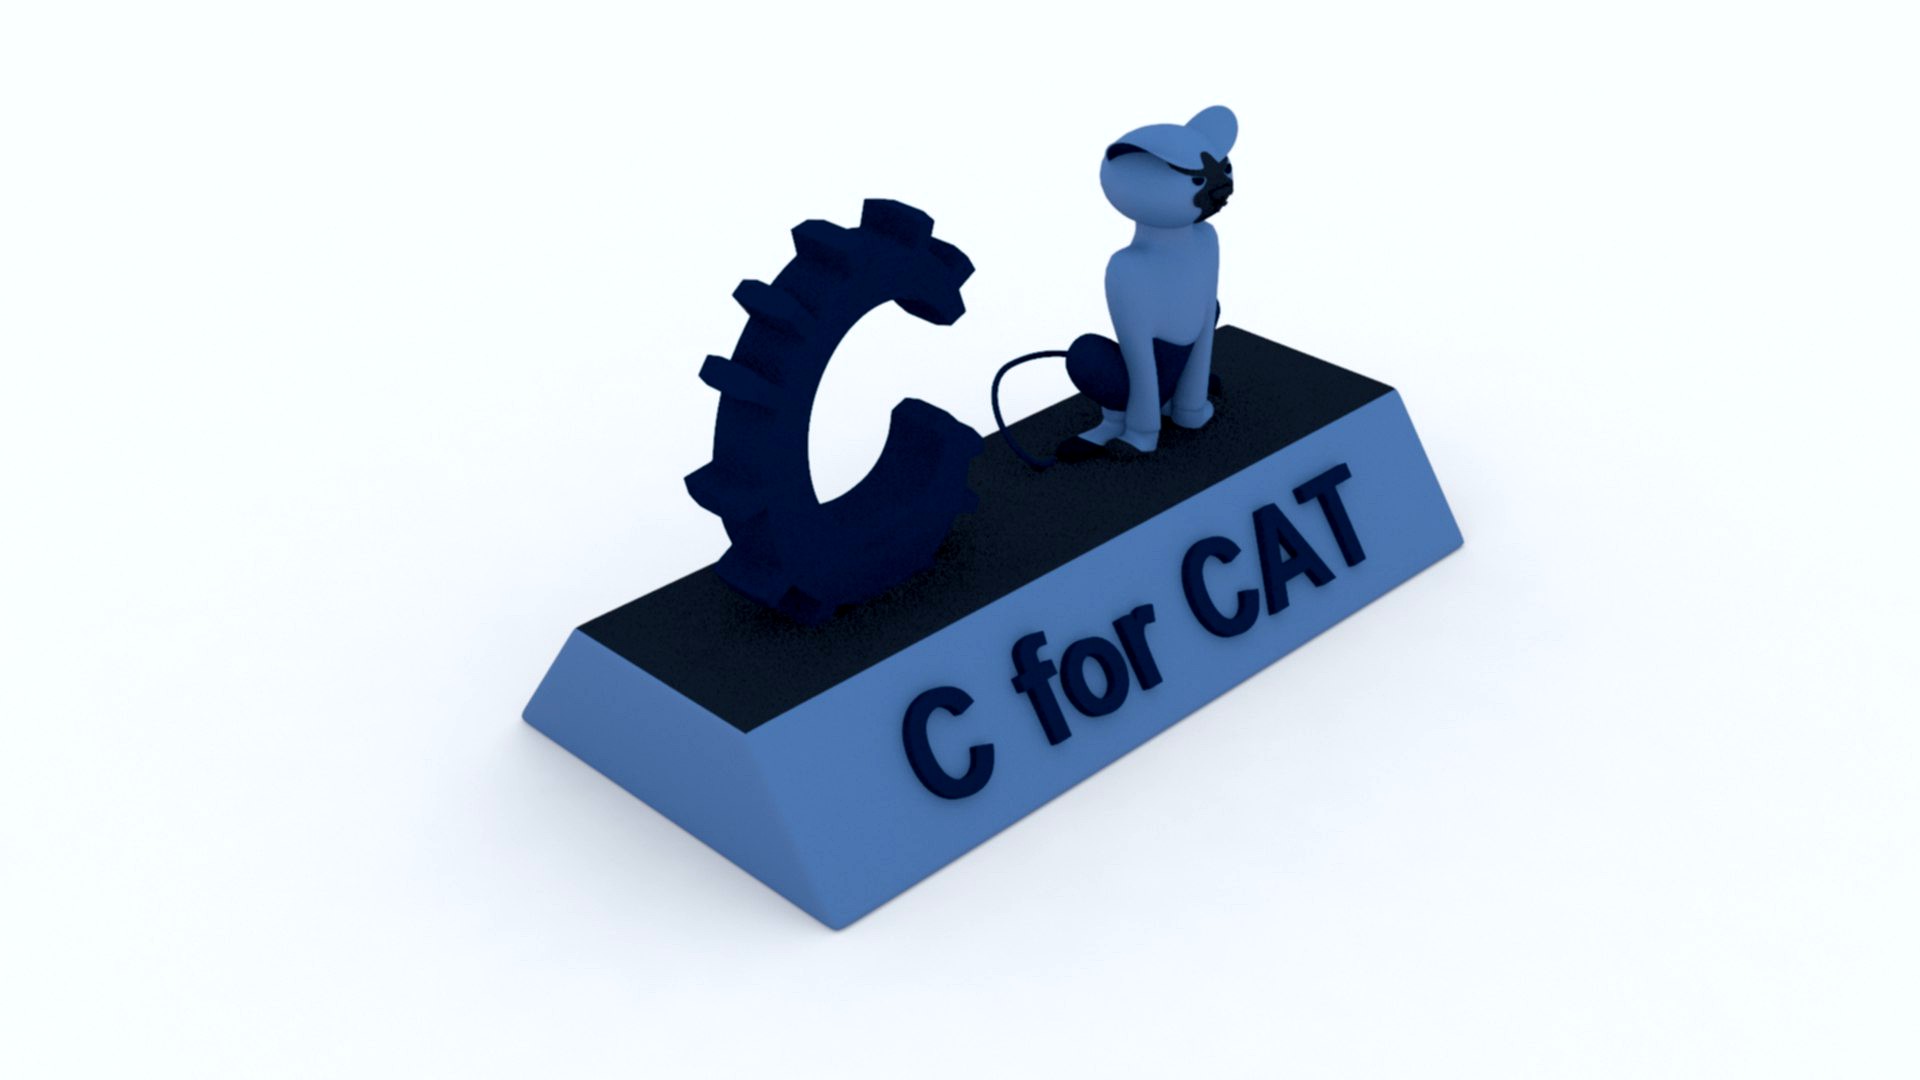 C for Cat